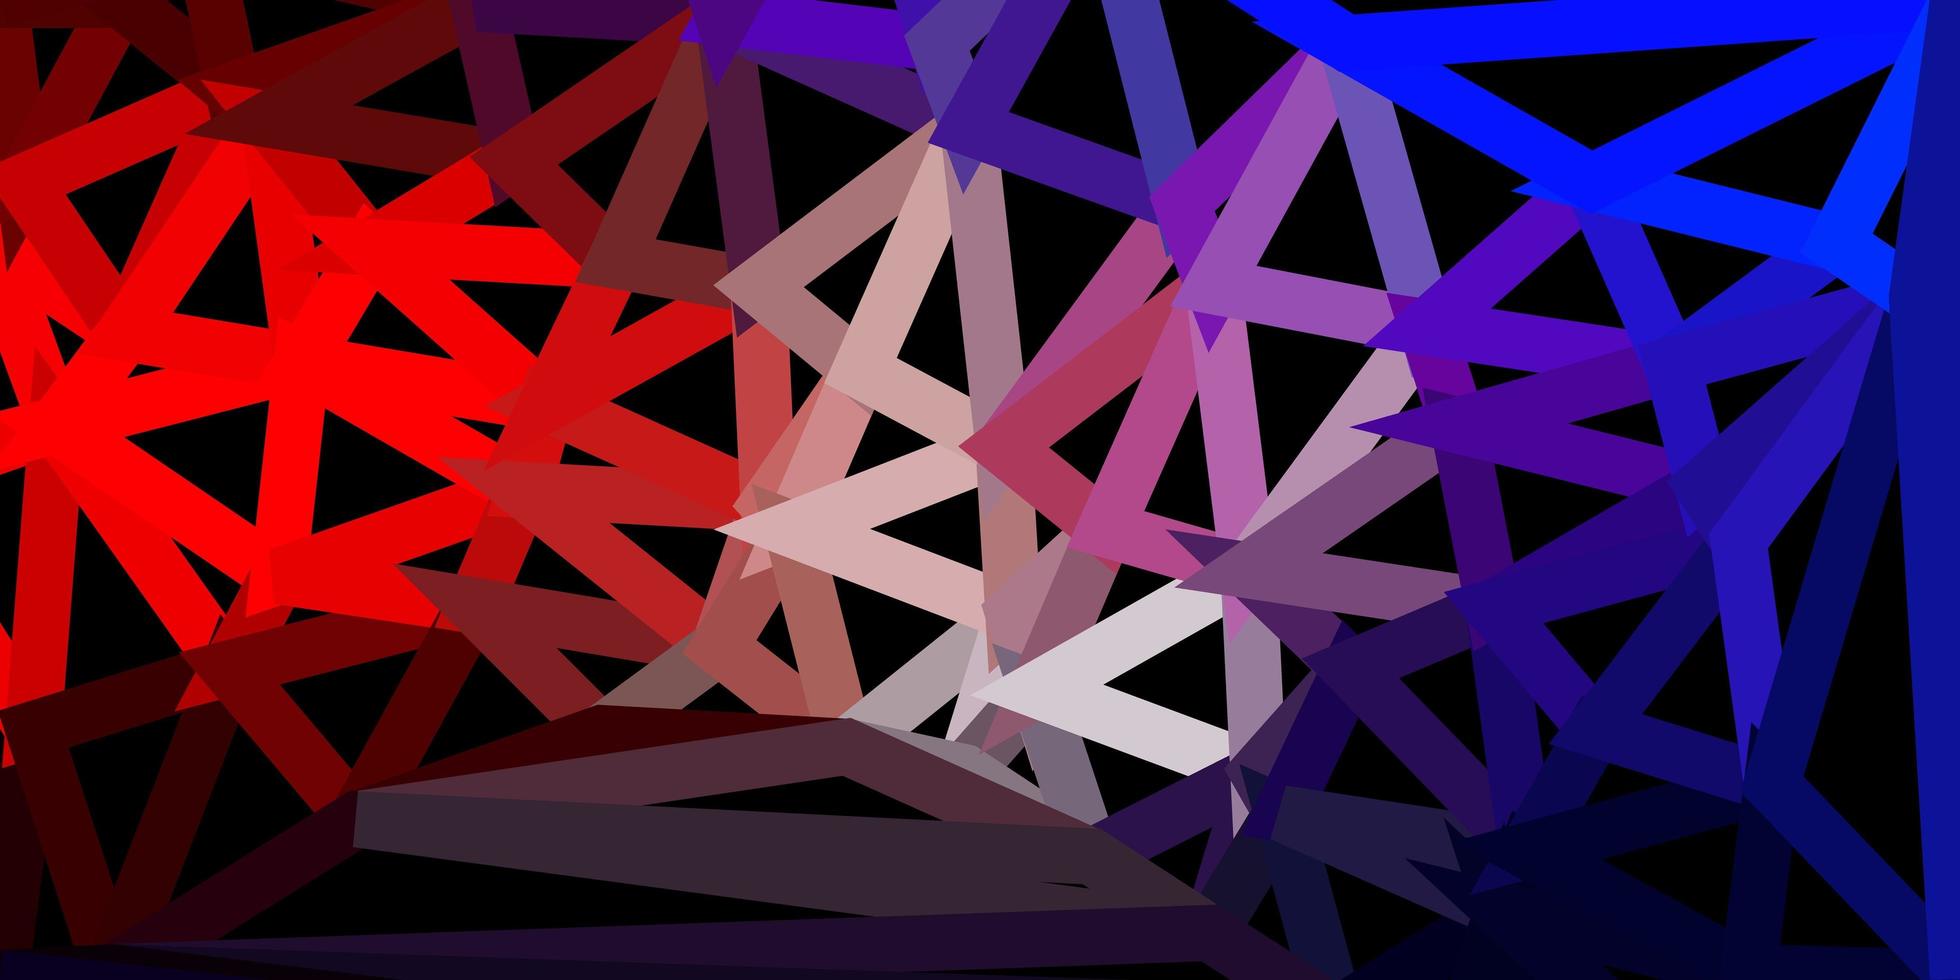 conception polygonale géométrique de vecteur bleu clair, rouge.